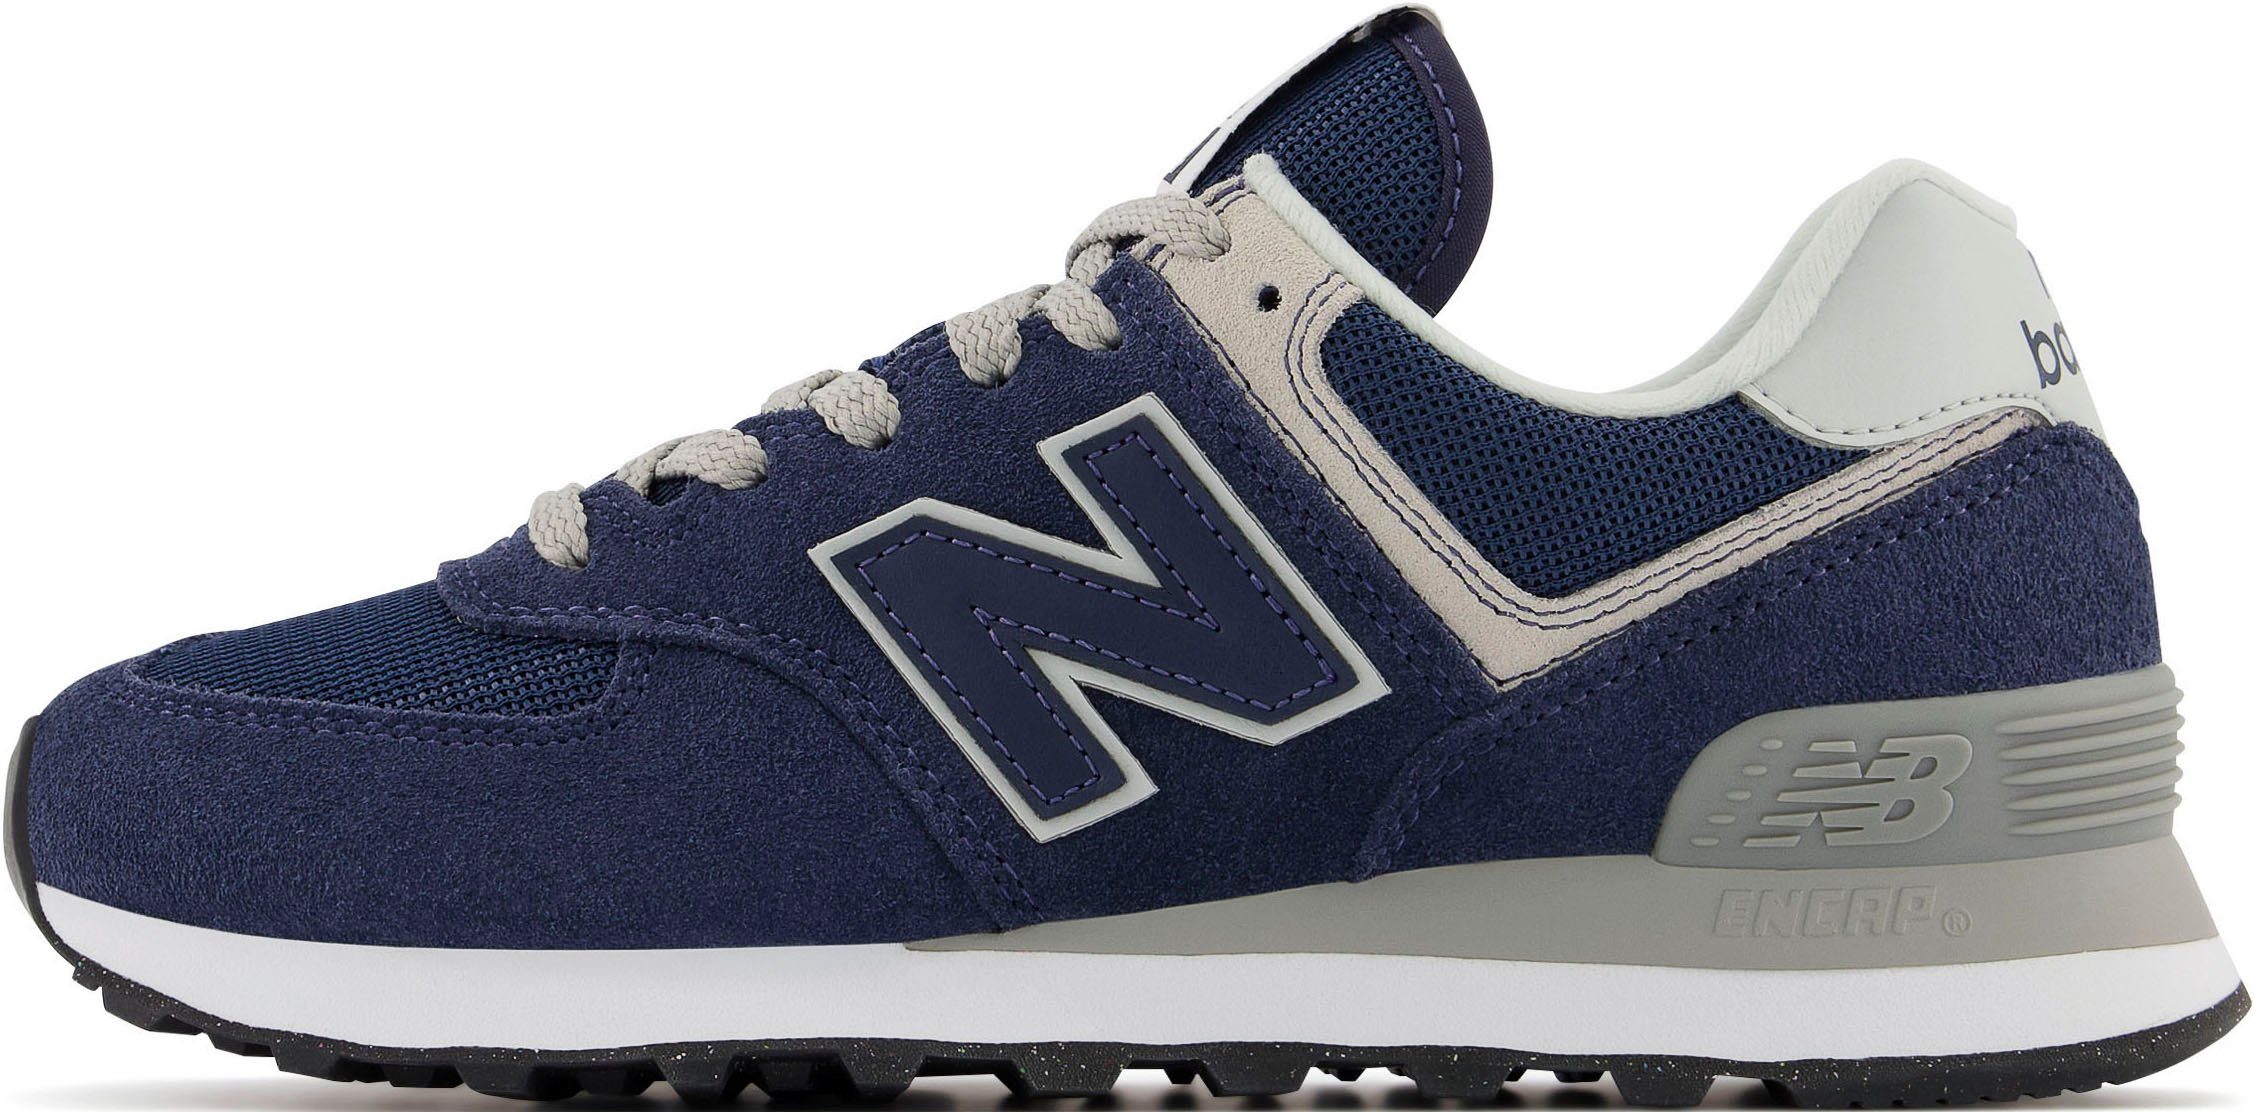 New navy-grau-weiß Core Balance Sneaker WL574